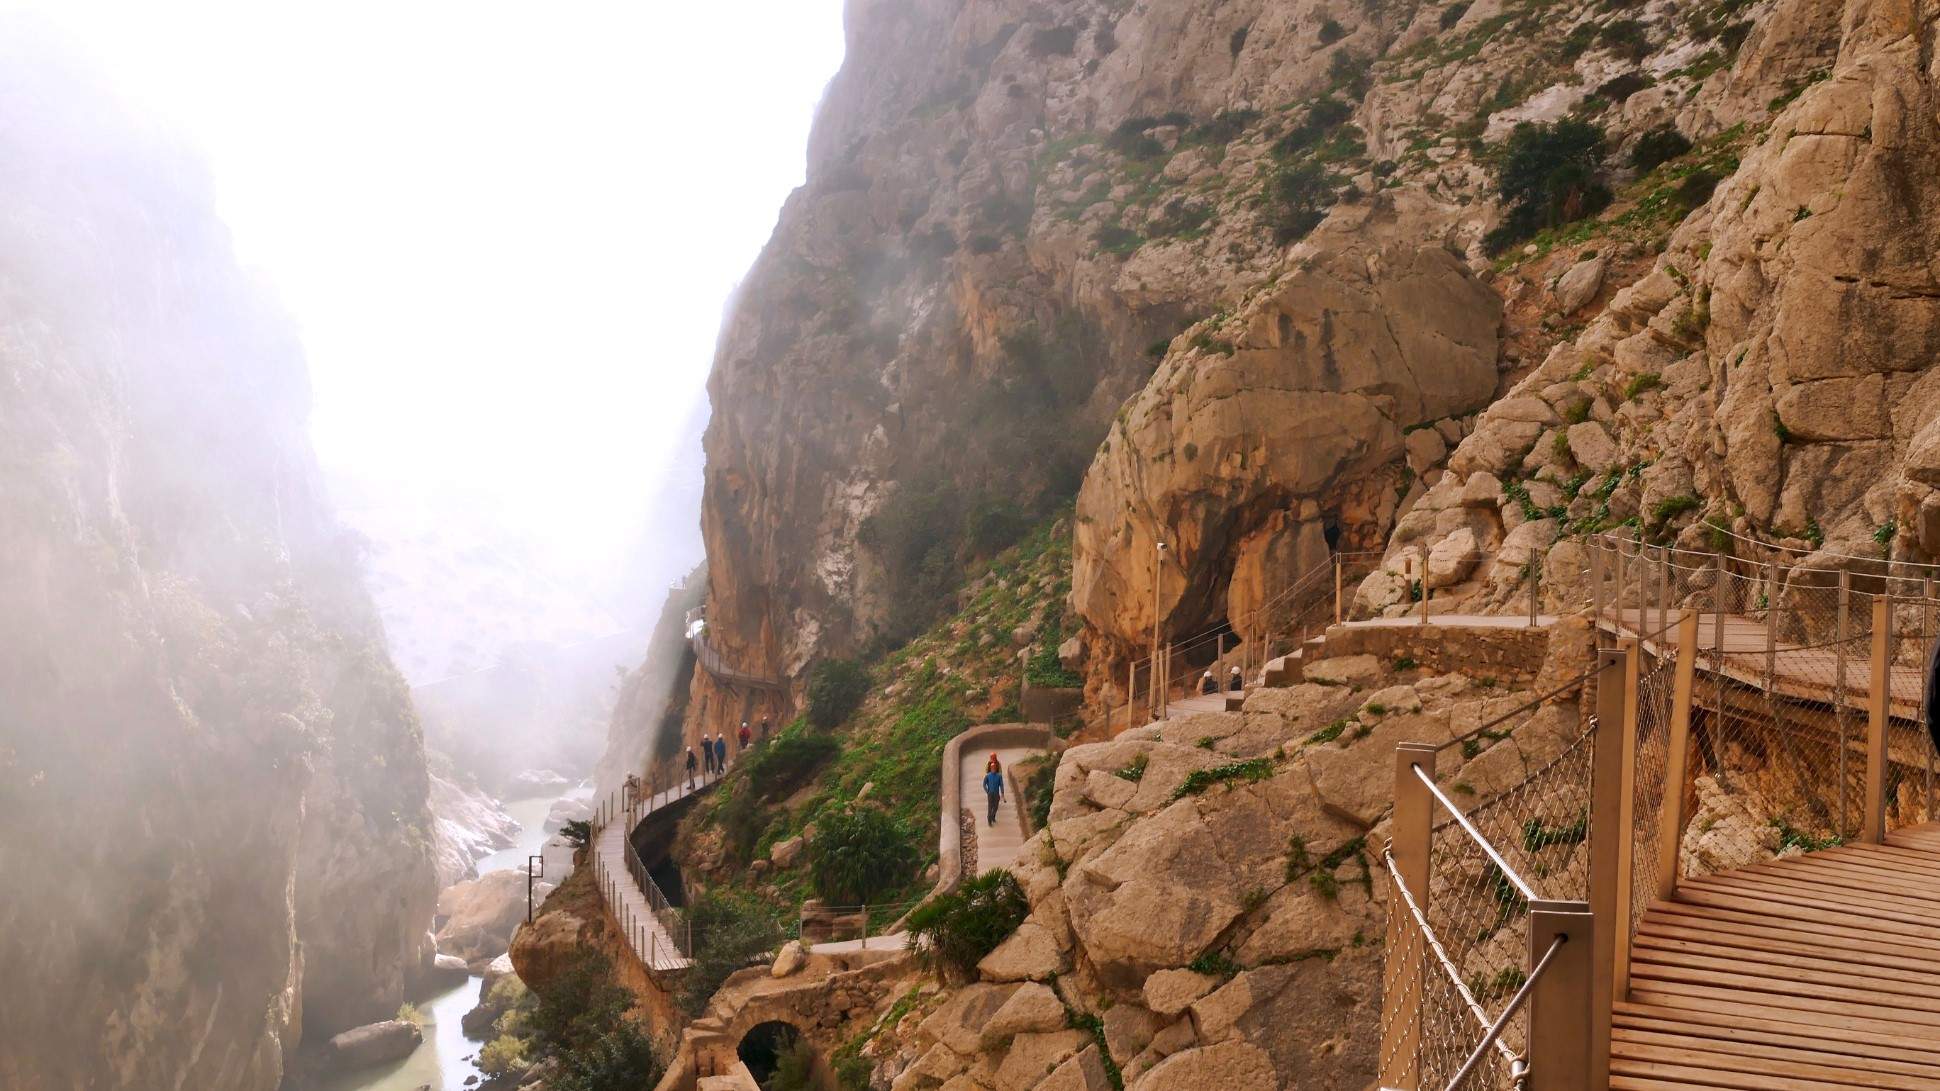 Zomertickets voor 's werelds gevaarlijkste pad 'Caminito del Rey' in Malaga, nu beschikbaar